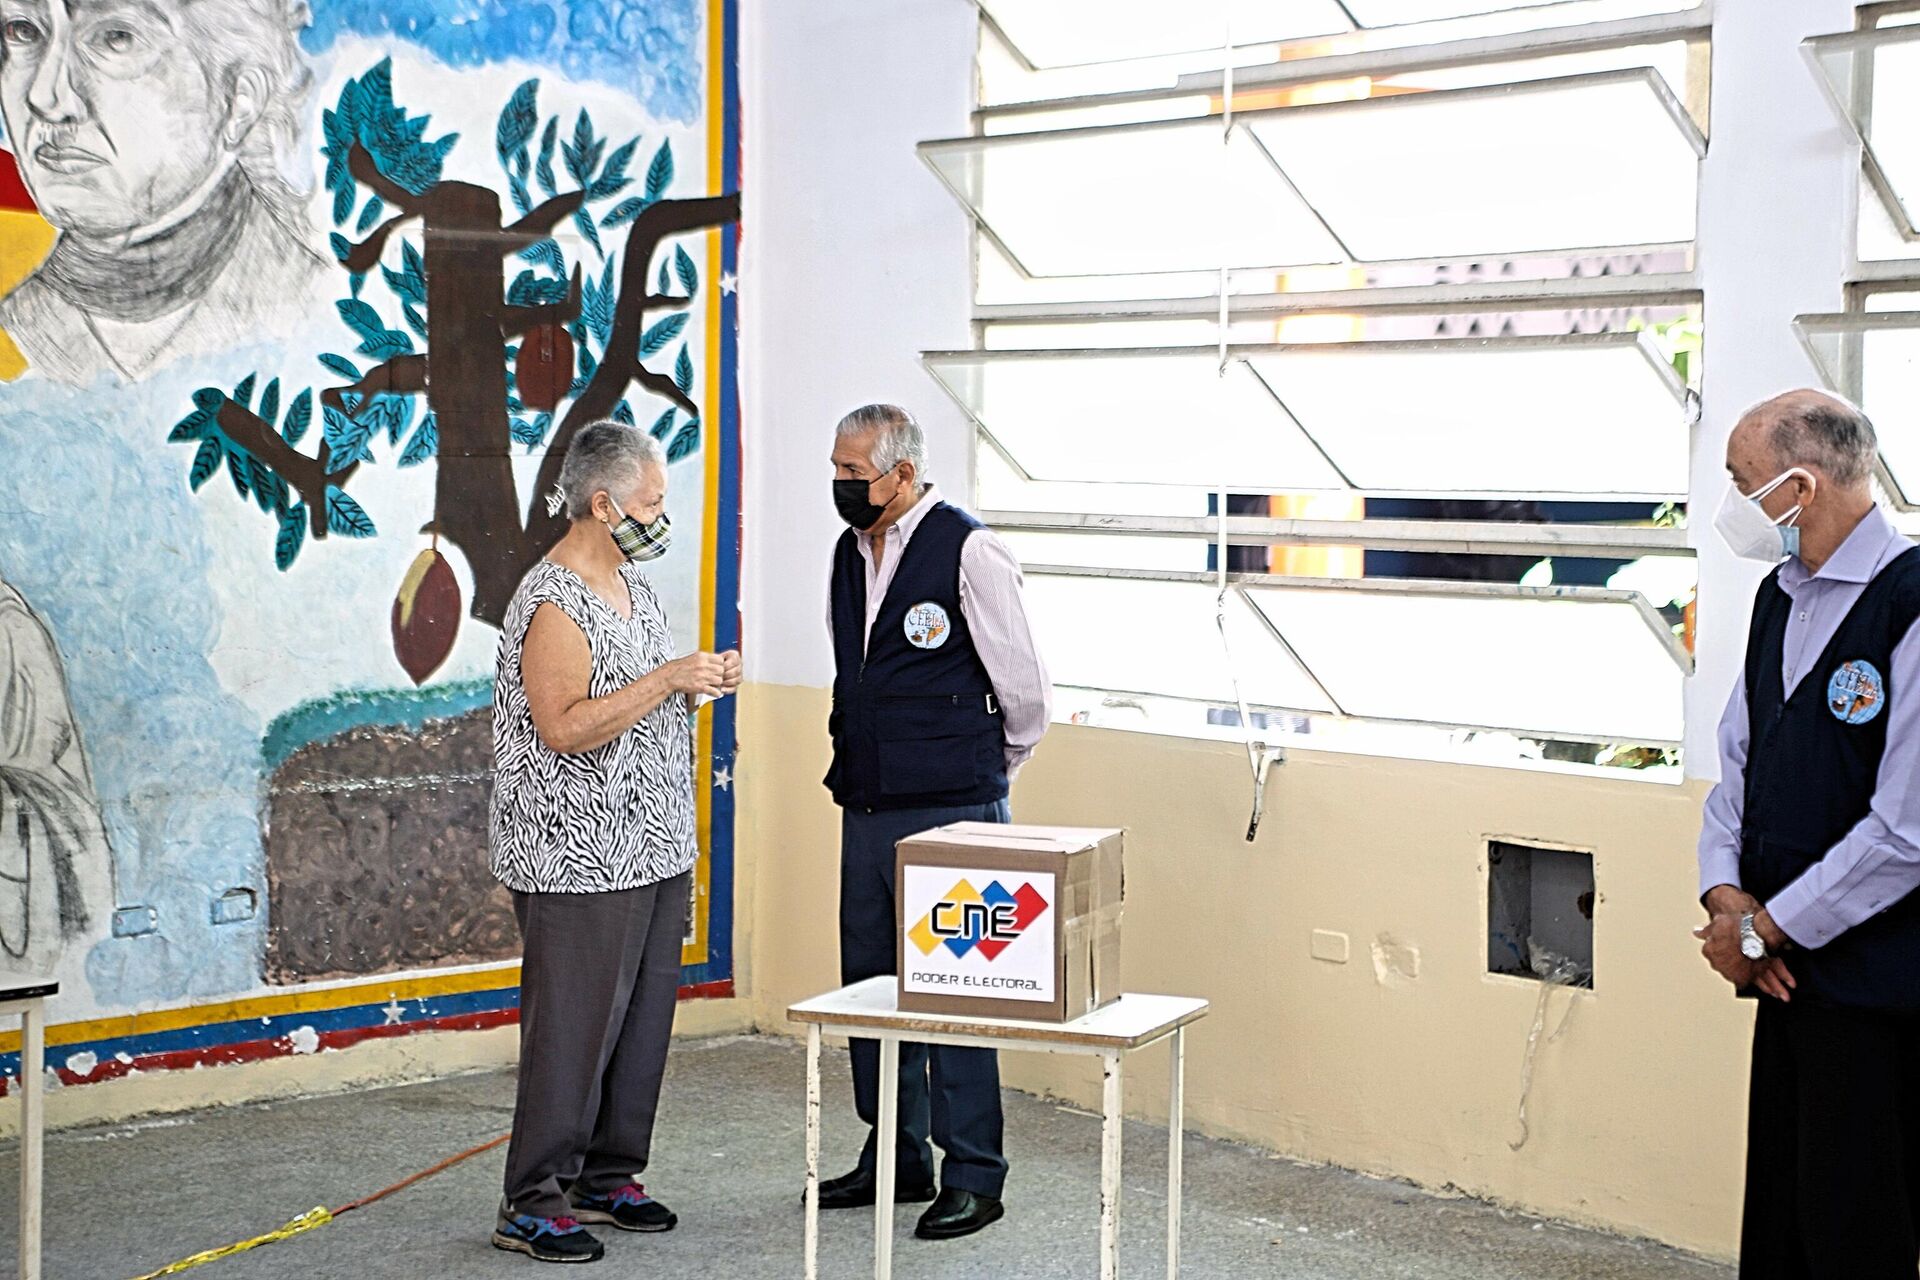 Expertos electorales de Latinoamérica presencian simulacro de votación en Venezuela - Sputnik Mundo, 1920, 11.10.2021